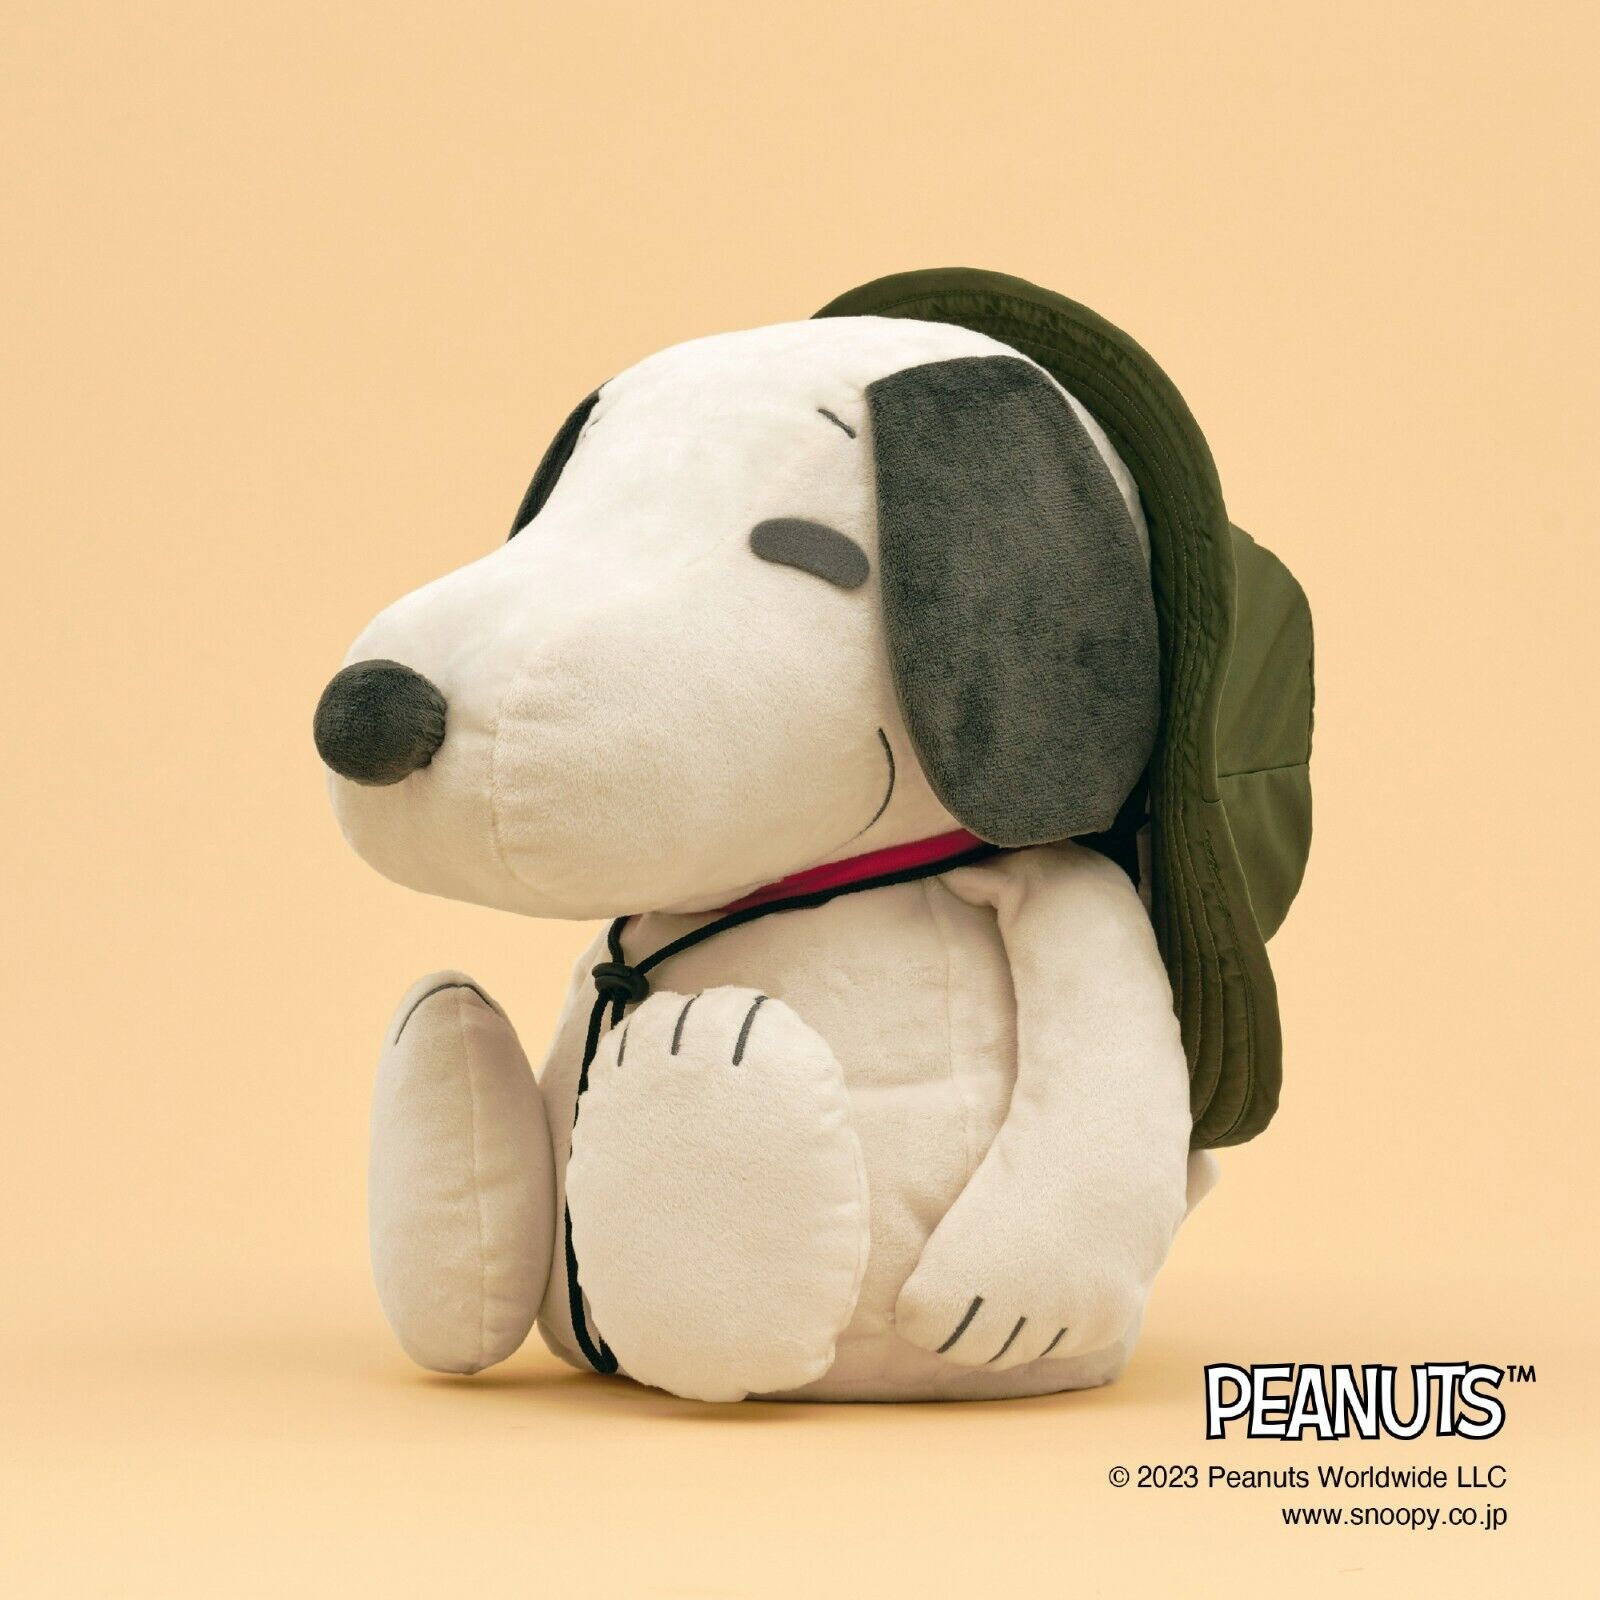 MIZUNO × PEANUTS Snoopy medicine ball with hat